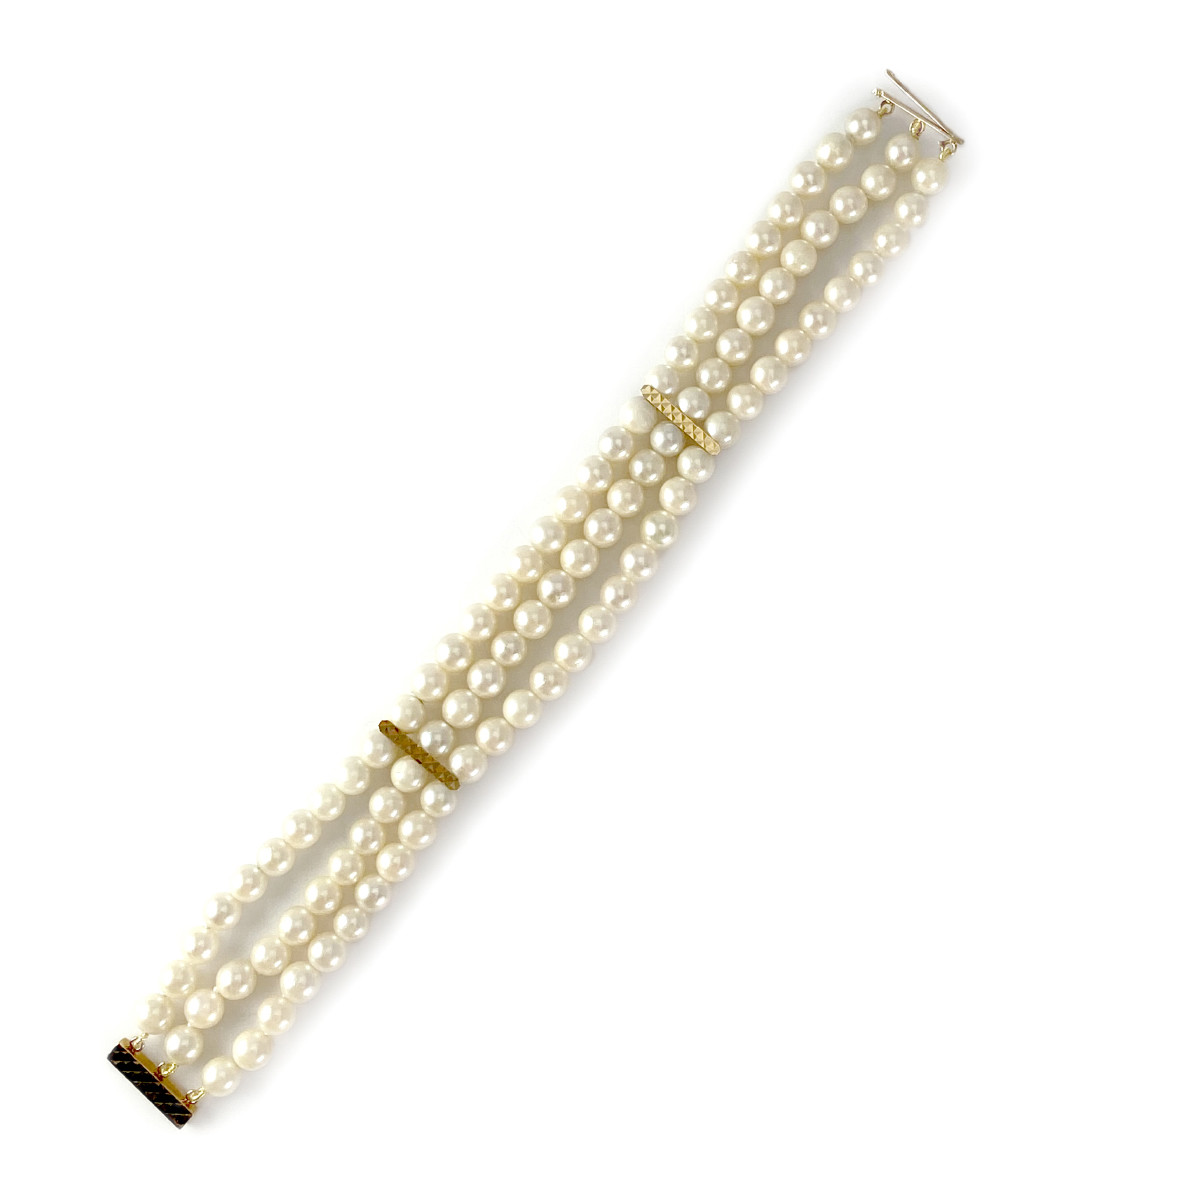 Bracelet d'occasion or 750 jaune perle de culture du japon - vue 3